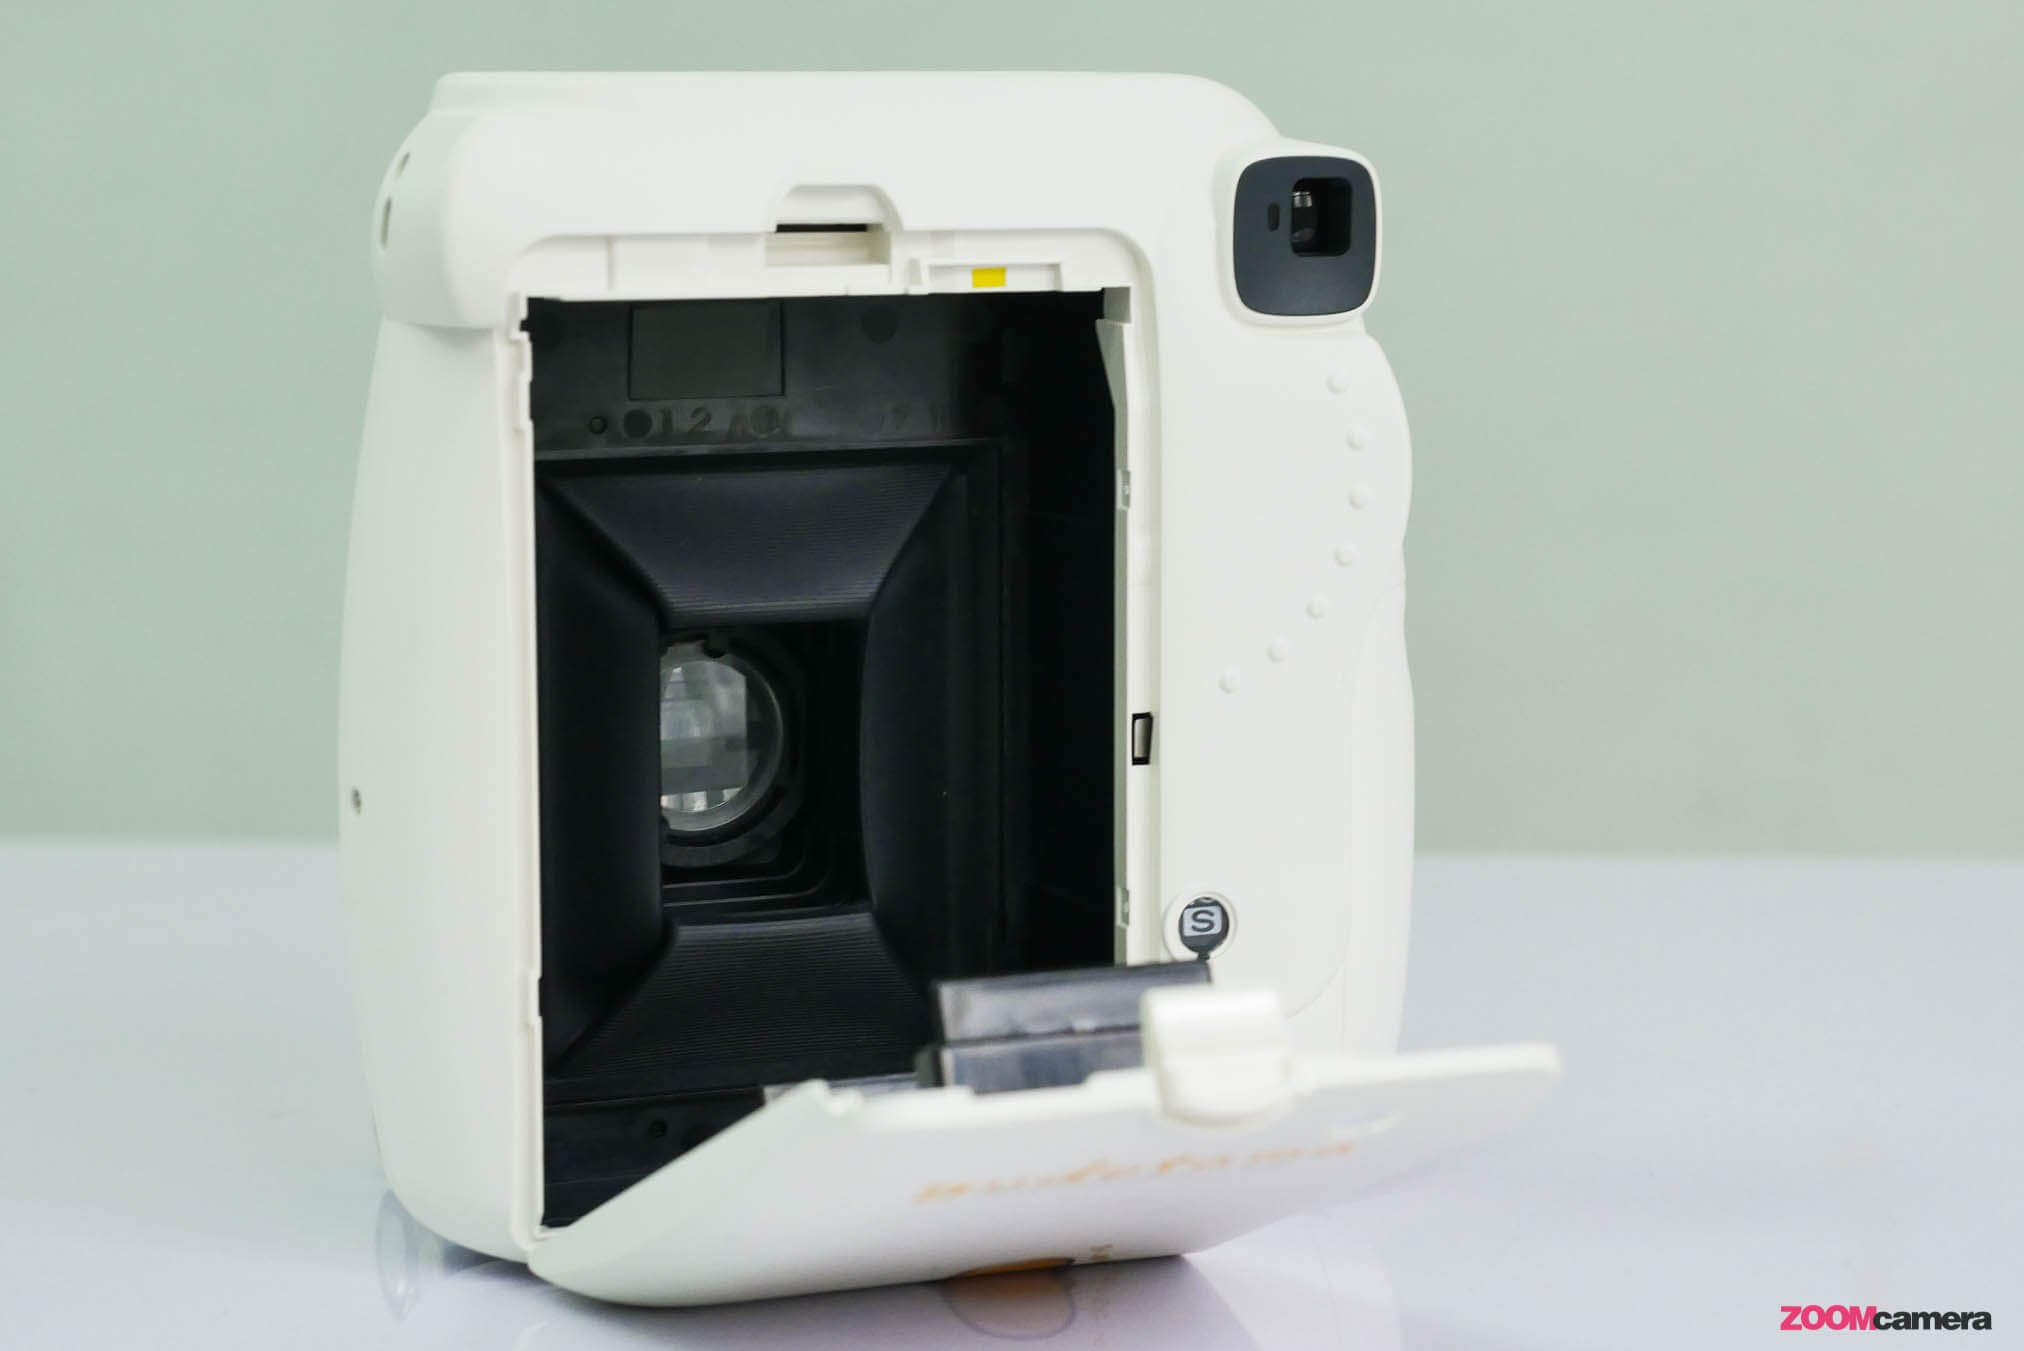 แกะกล่องรีวิวกล้องไข่ขี้เกียจ Instax Mini8 - Gudetama ความกวนเส้นน่ารัก  ที่มาอยู่บนกล้องฟิล์มสุดชิค | Zoomcamera